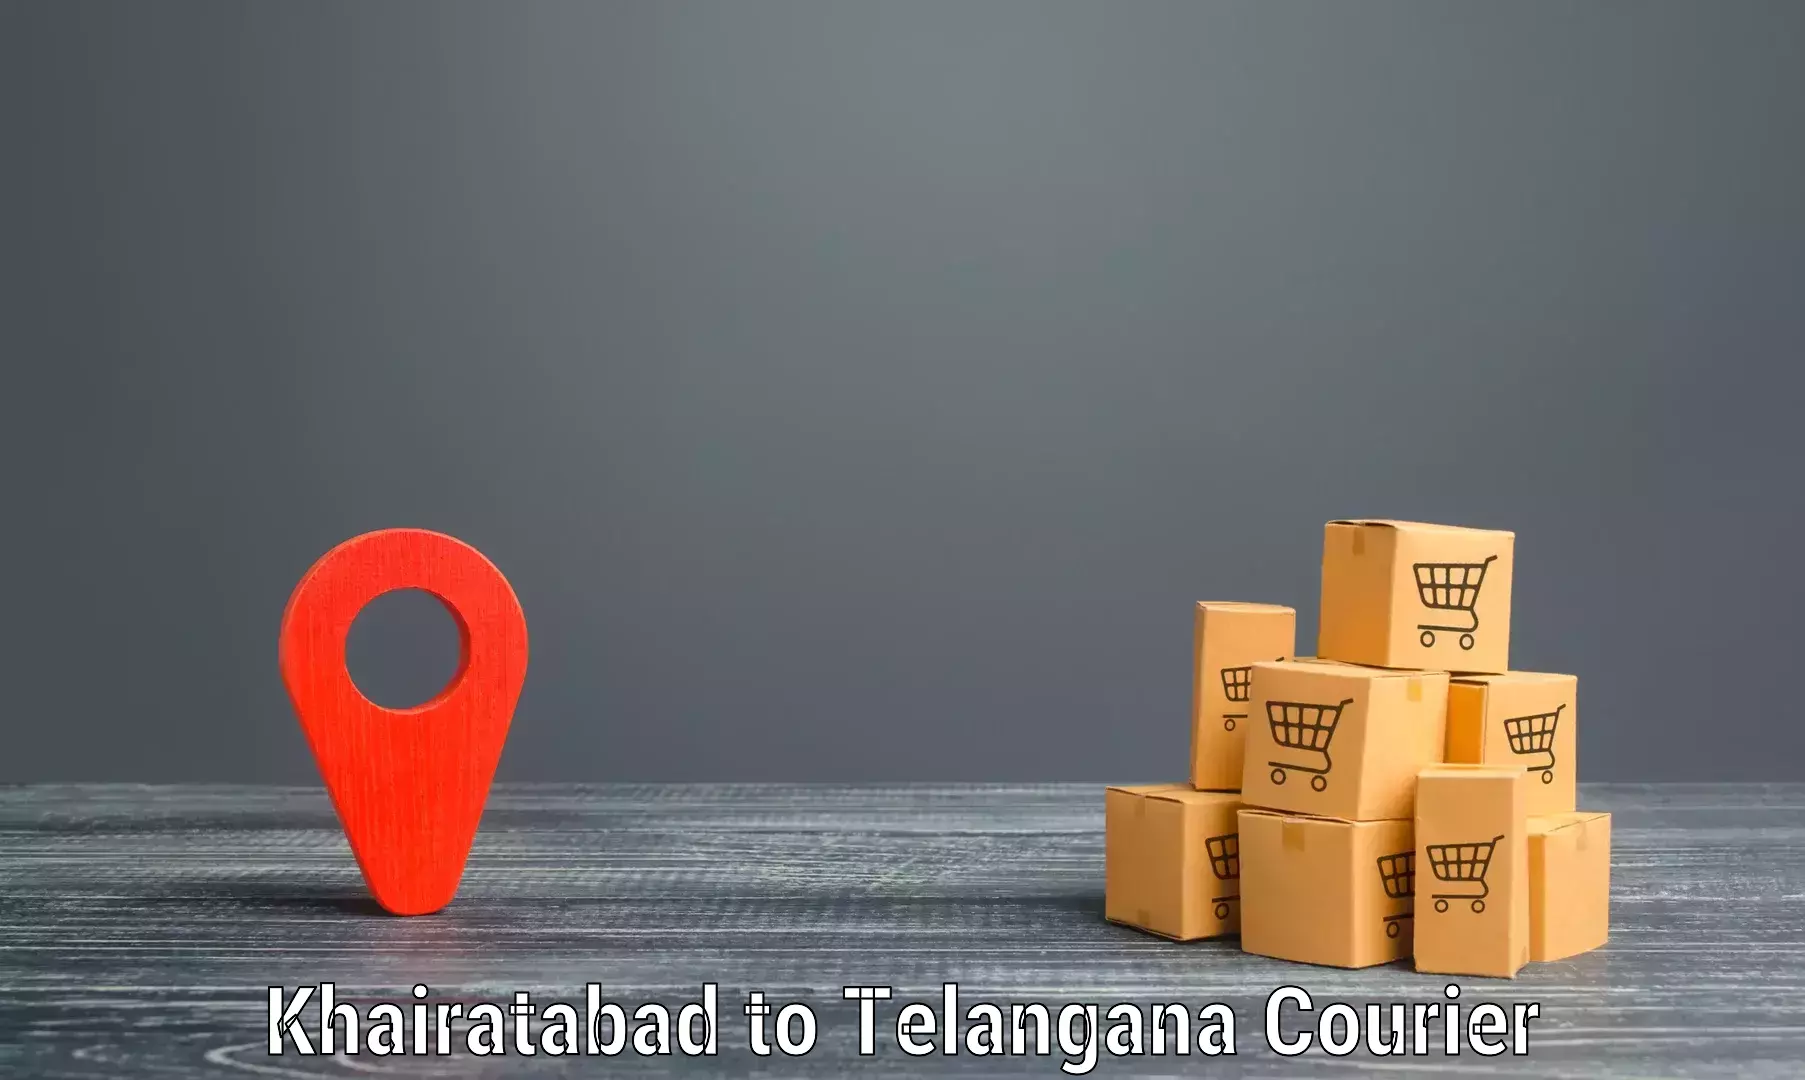 Express package handling Khairatabad to Mahabubabad